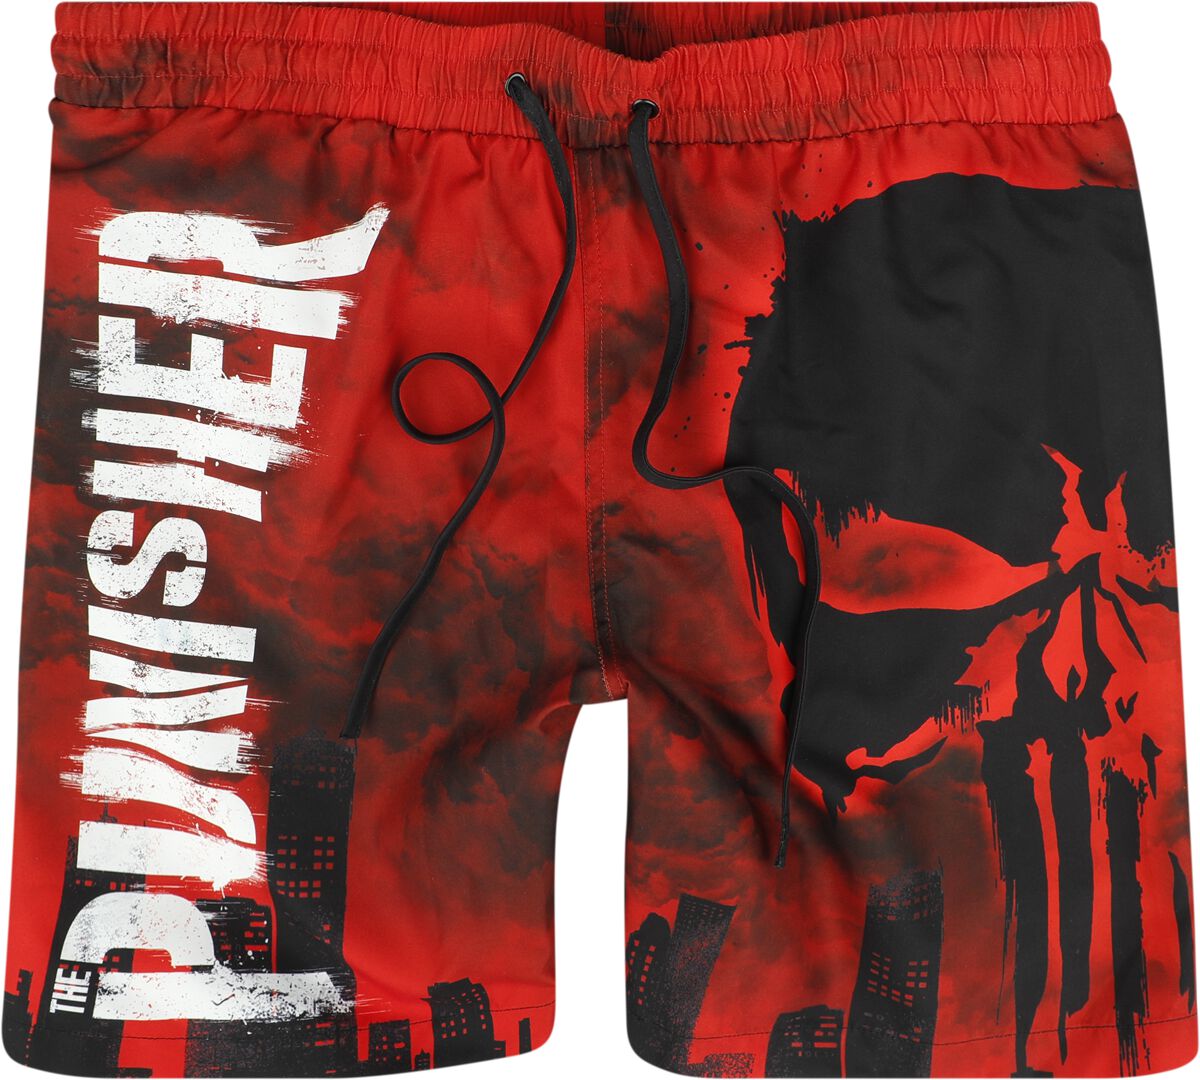 The Punisher - Marvel Badeshort - Skull - Red Desaster - S bis XXL - für Männer - Größe XXL - multicolor  - EMP exklusives Merchandise!